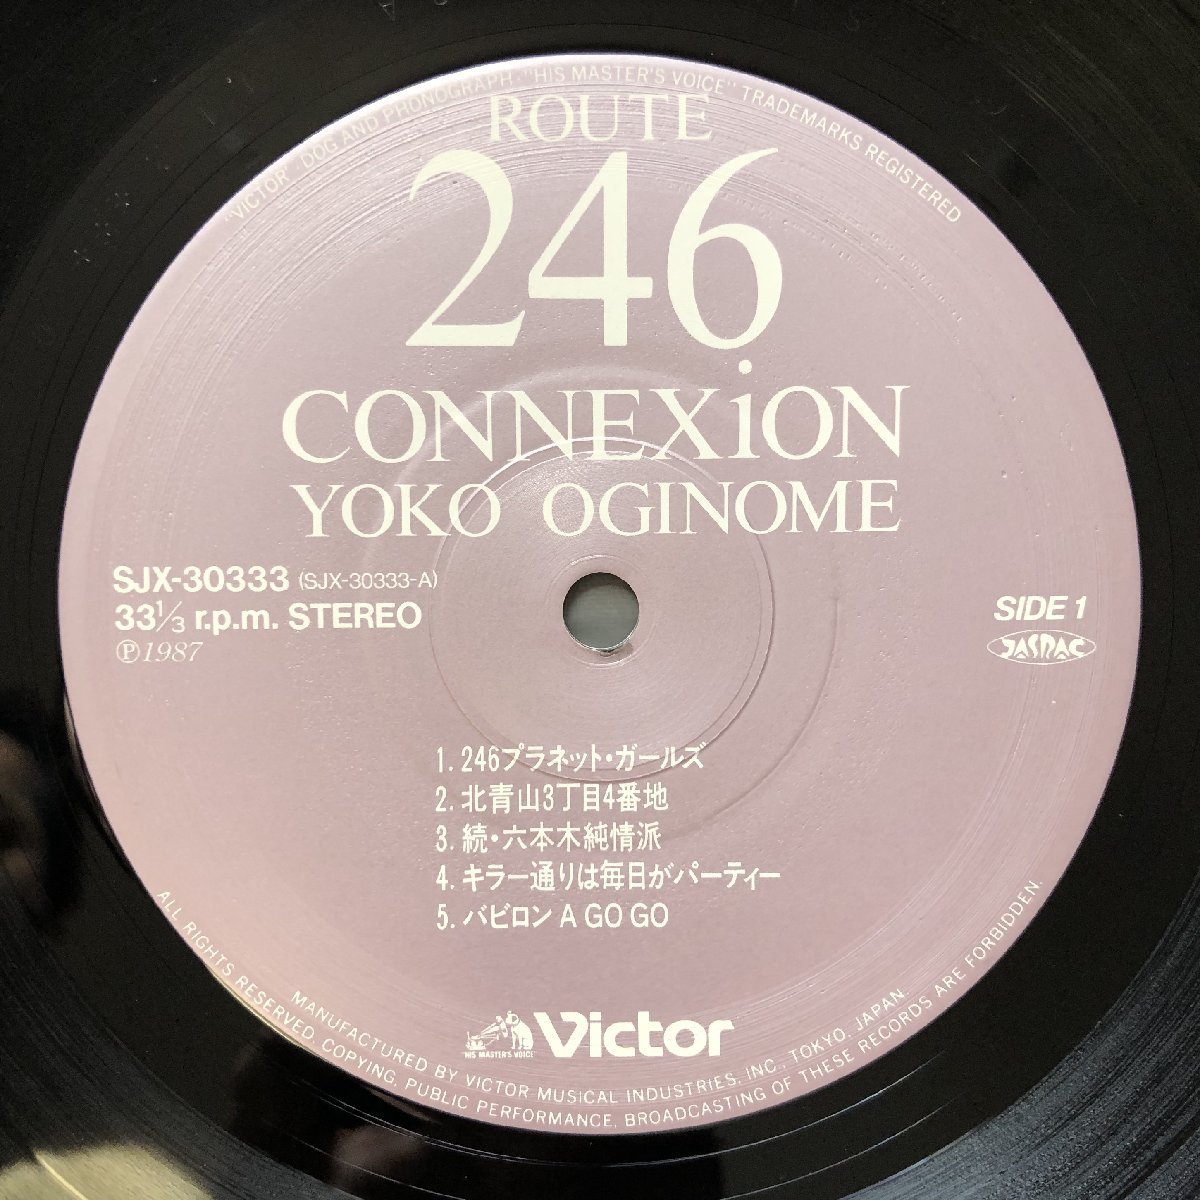 傷なし美盤 レア盤 1987年 オリジナルリリース盤 荻野目洋子 Yoko Oginome LPレコード Route 246 Connexion アイドル 8p写真ライナー_画像7